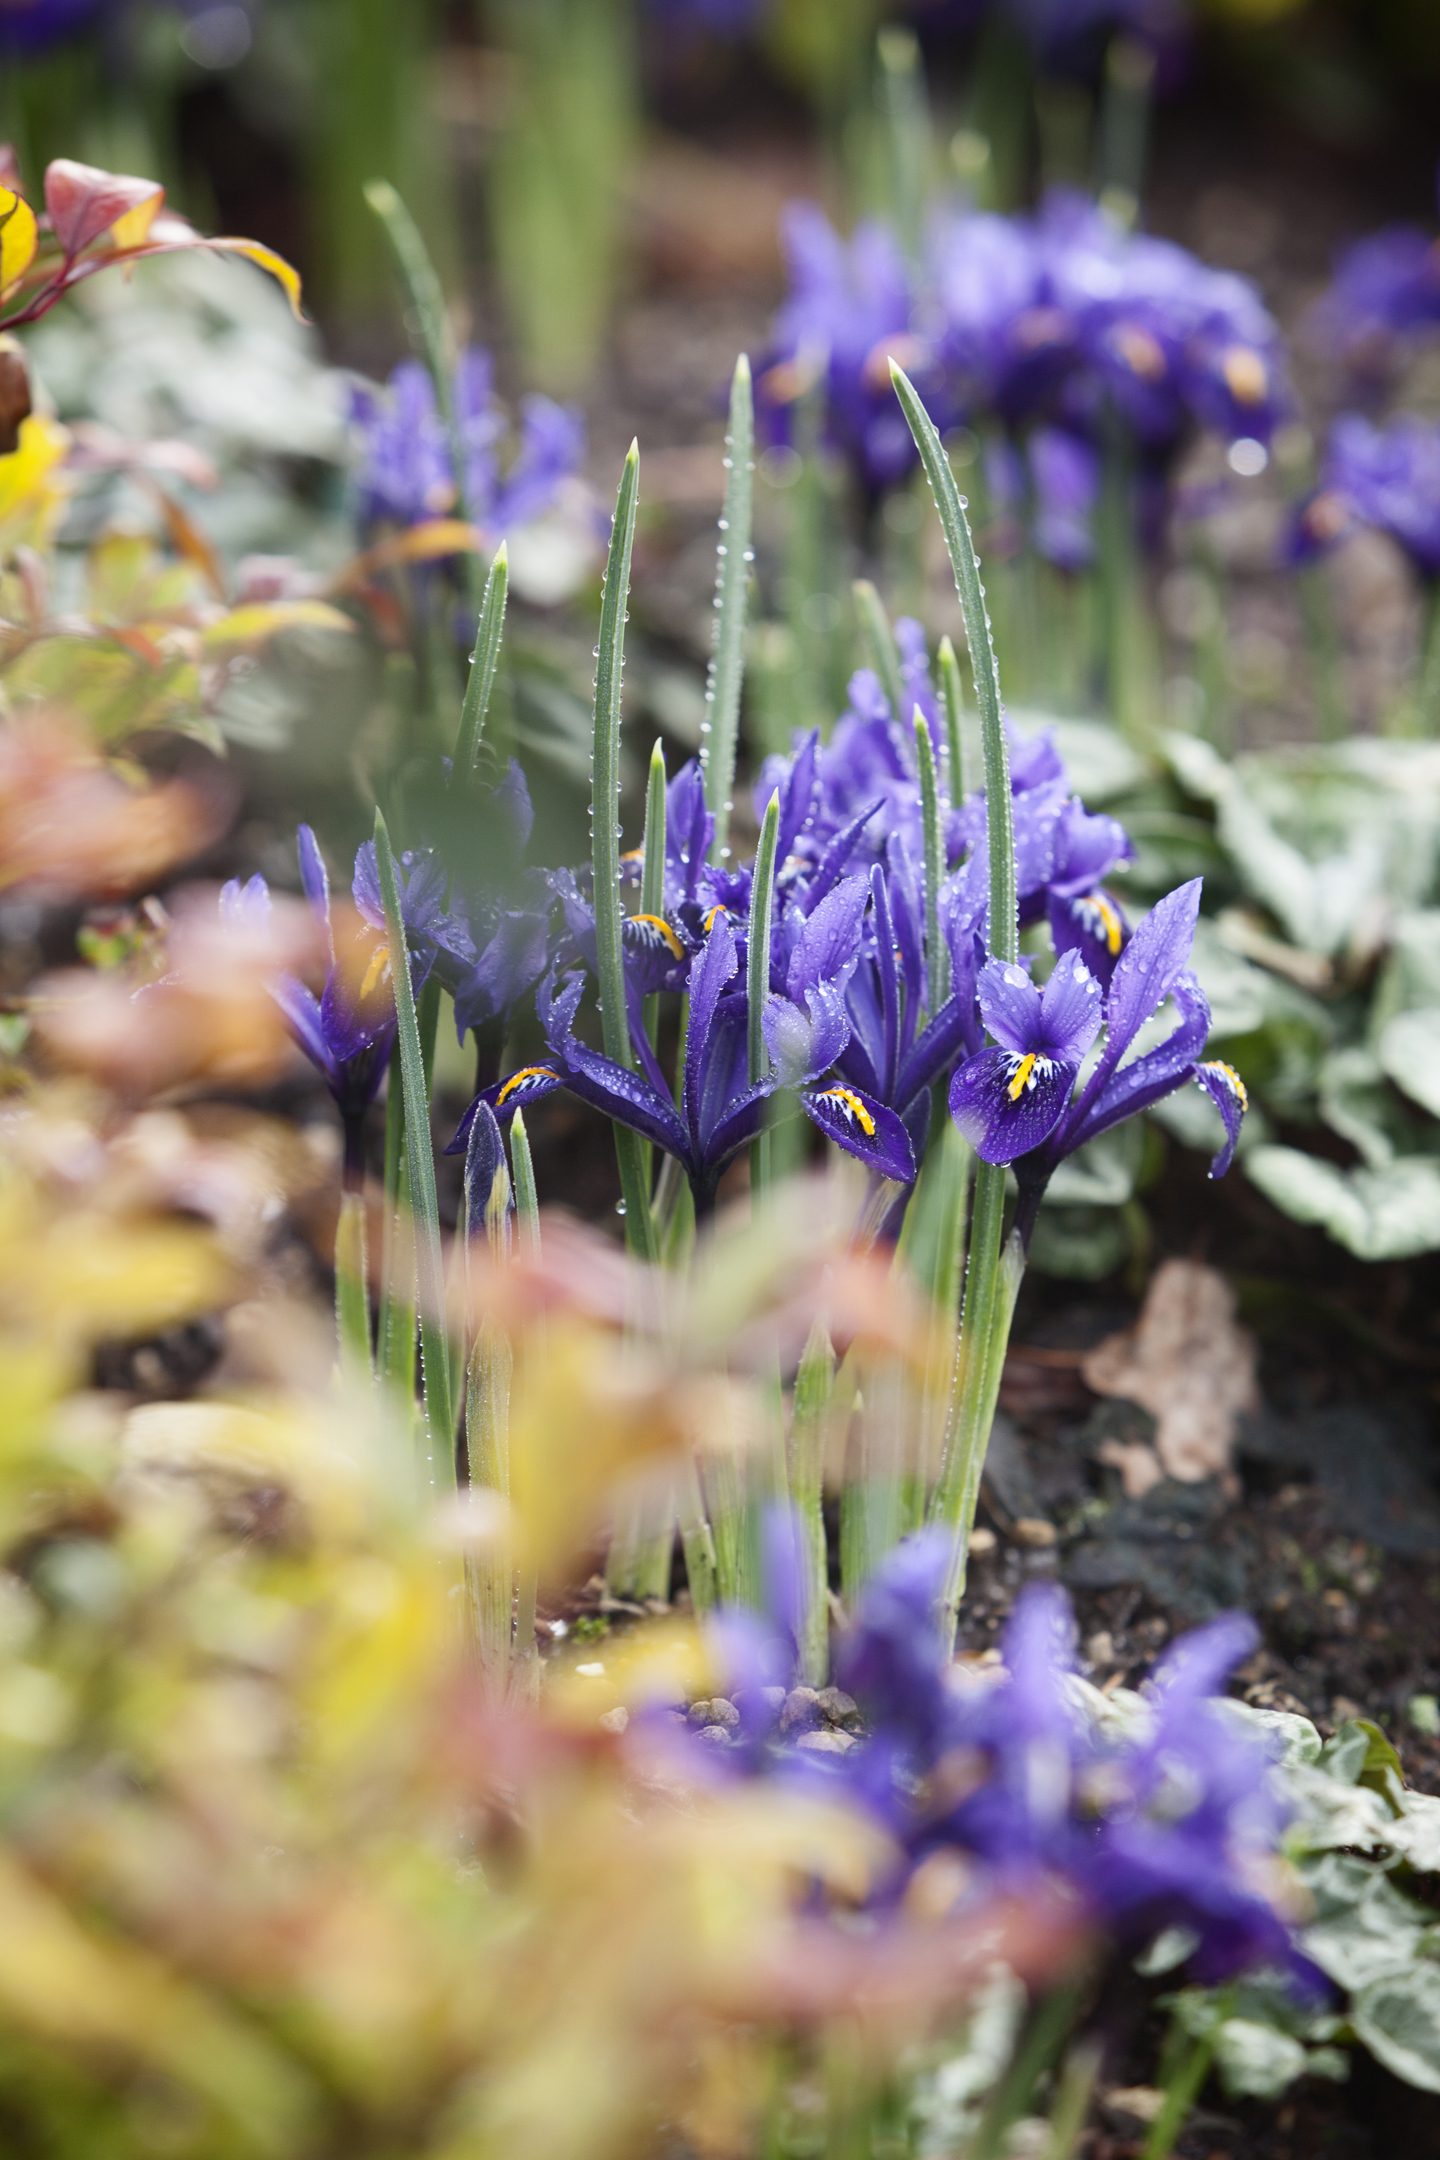 Iris 'reticulata' in Harlow Carr winter garden. (RHS/Lee Beel/PA)